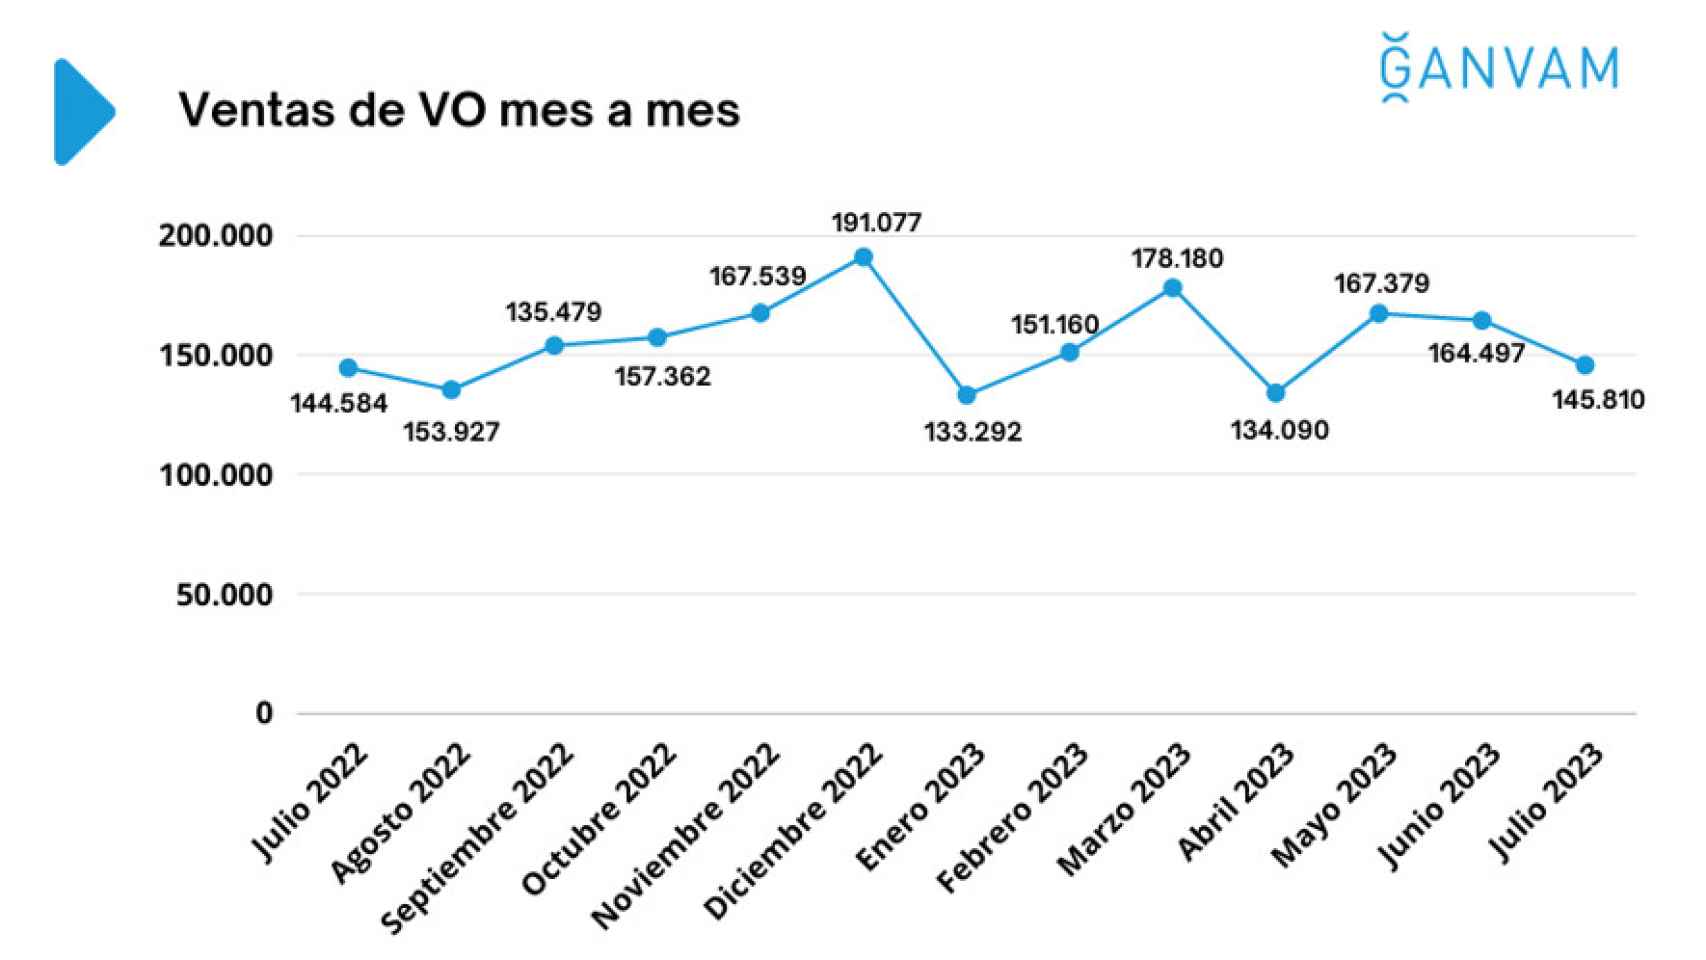 Las ventas de VO en julio se han reducido respecto a los dos últimos meses.